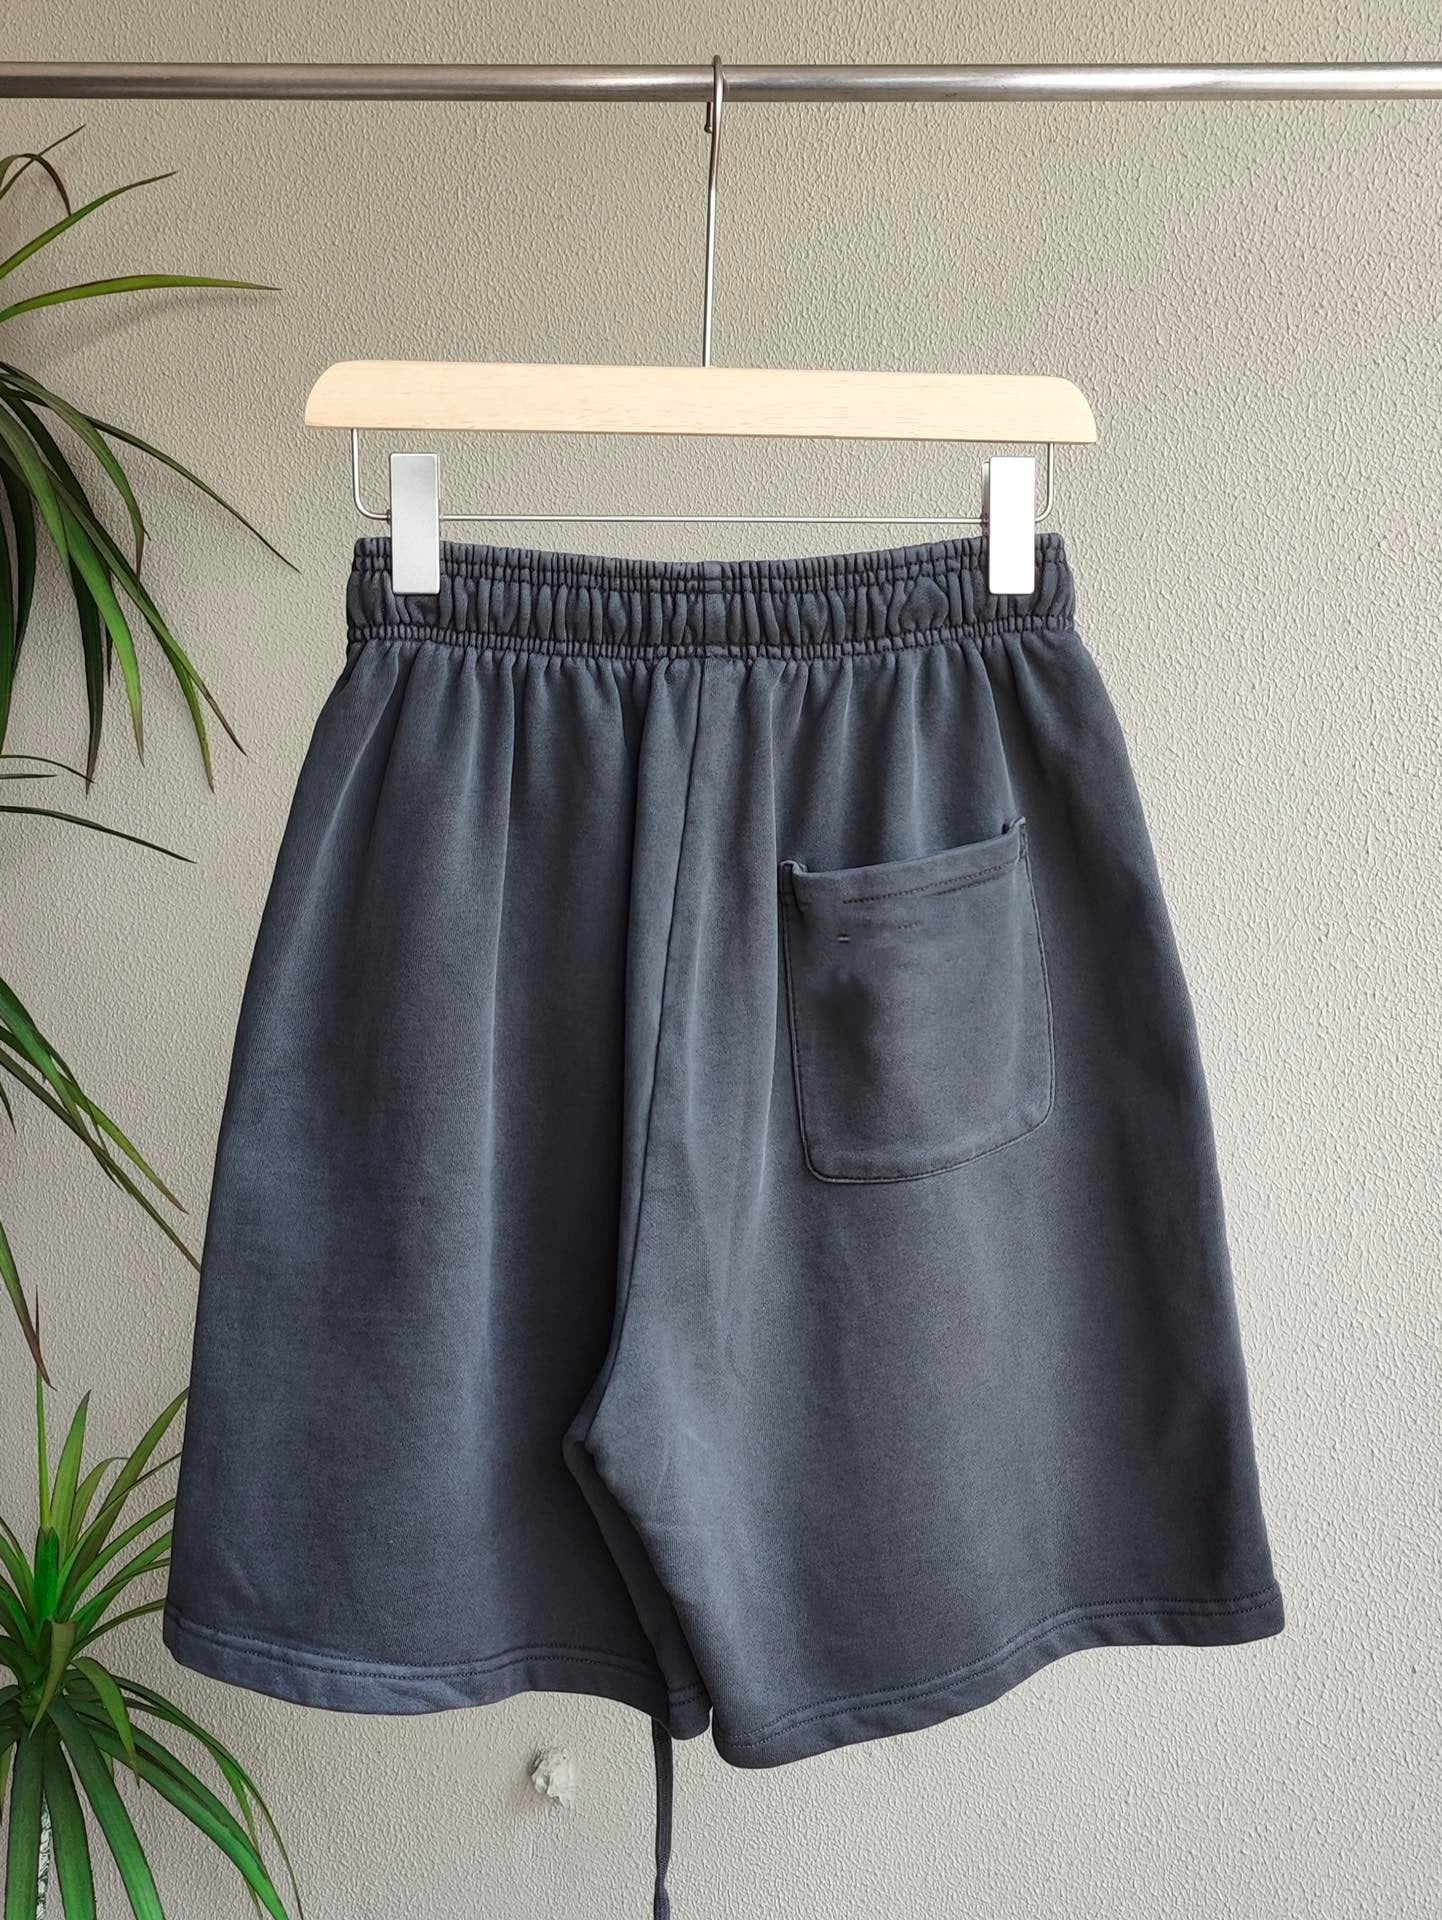 E2125# Unisex Shirts Shorts Set